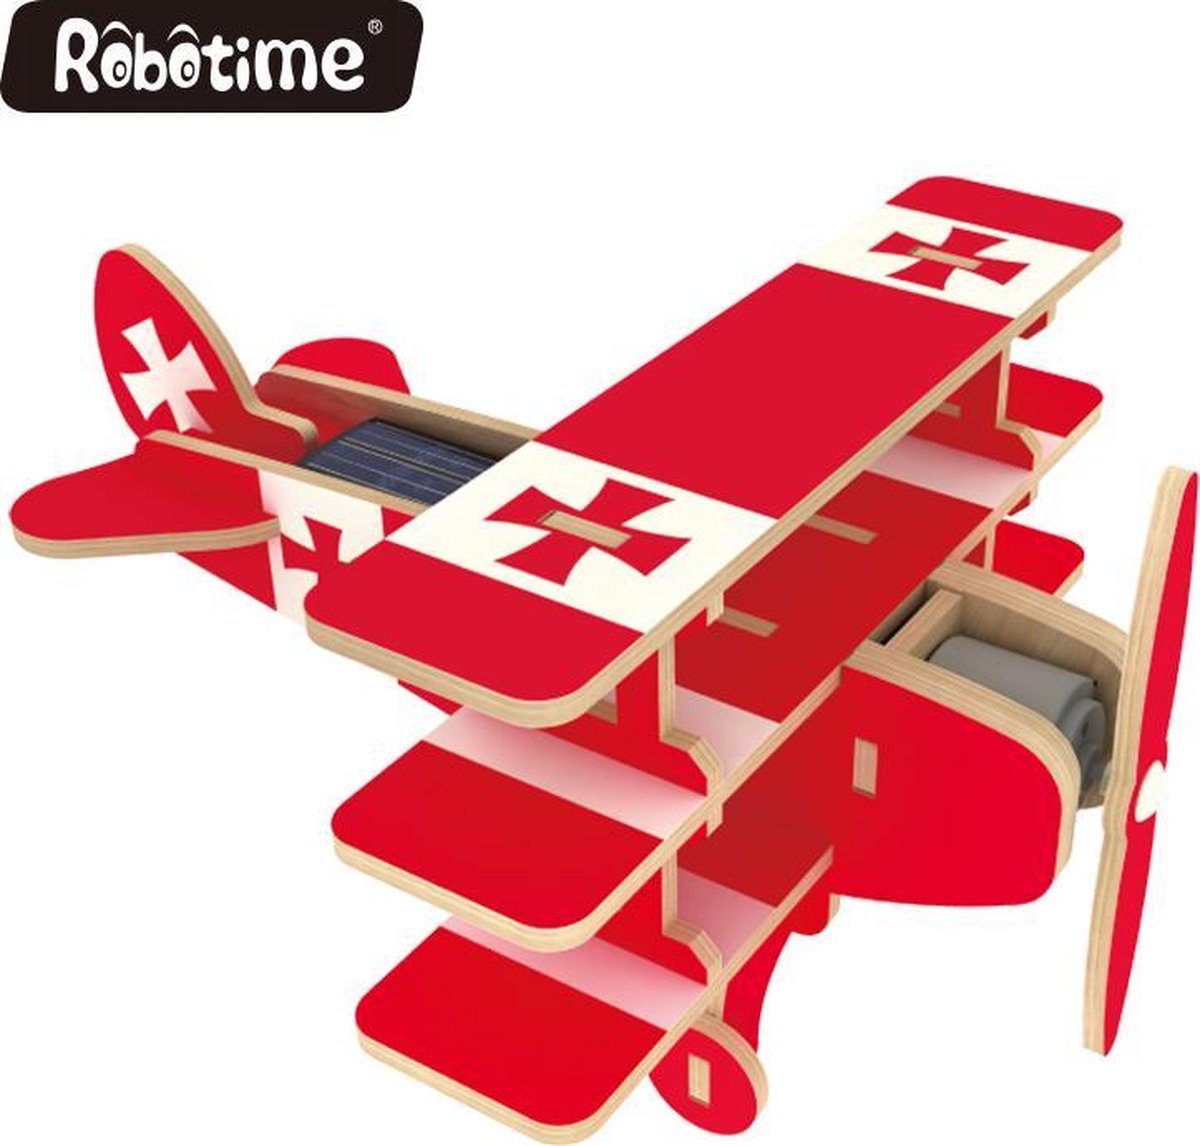 Robotime P250S houten speelgoed vliegtuig met zonnecel